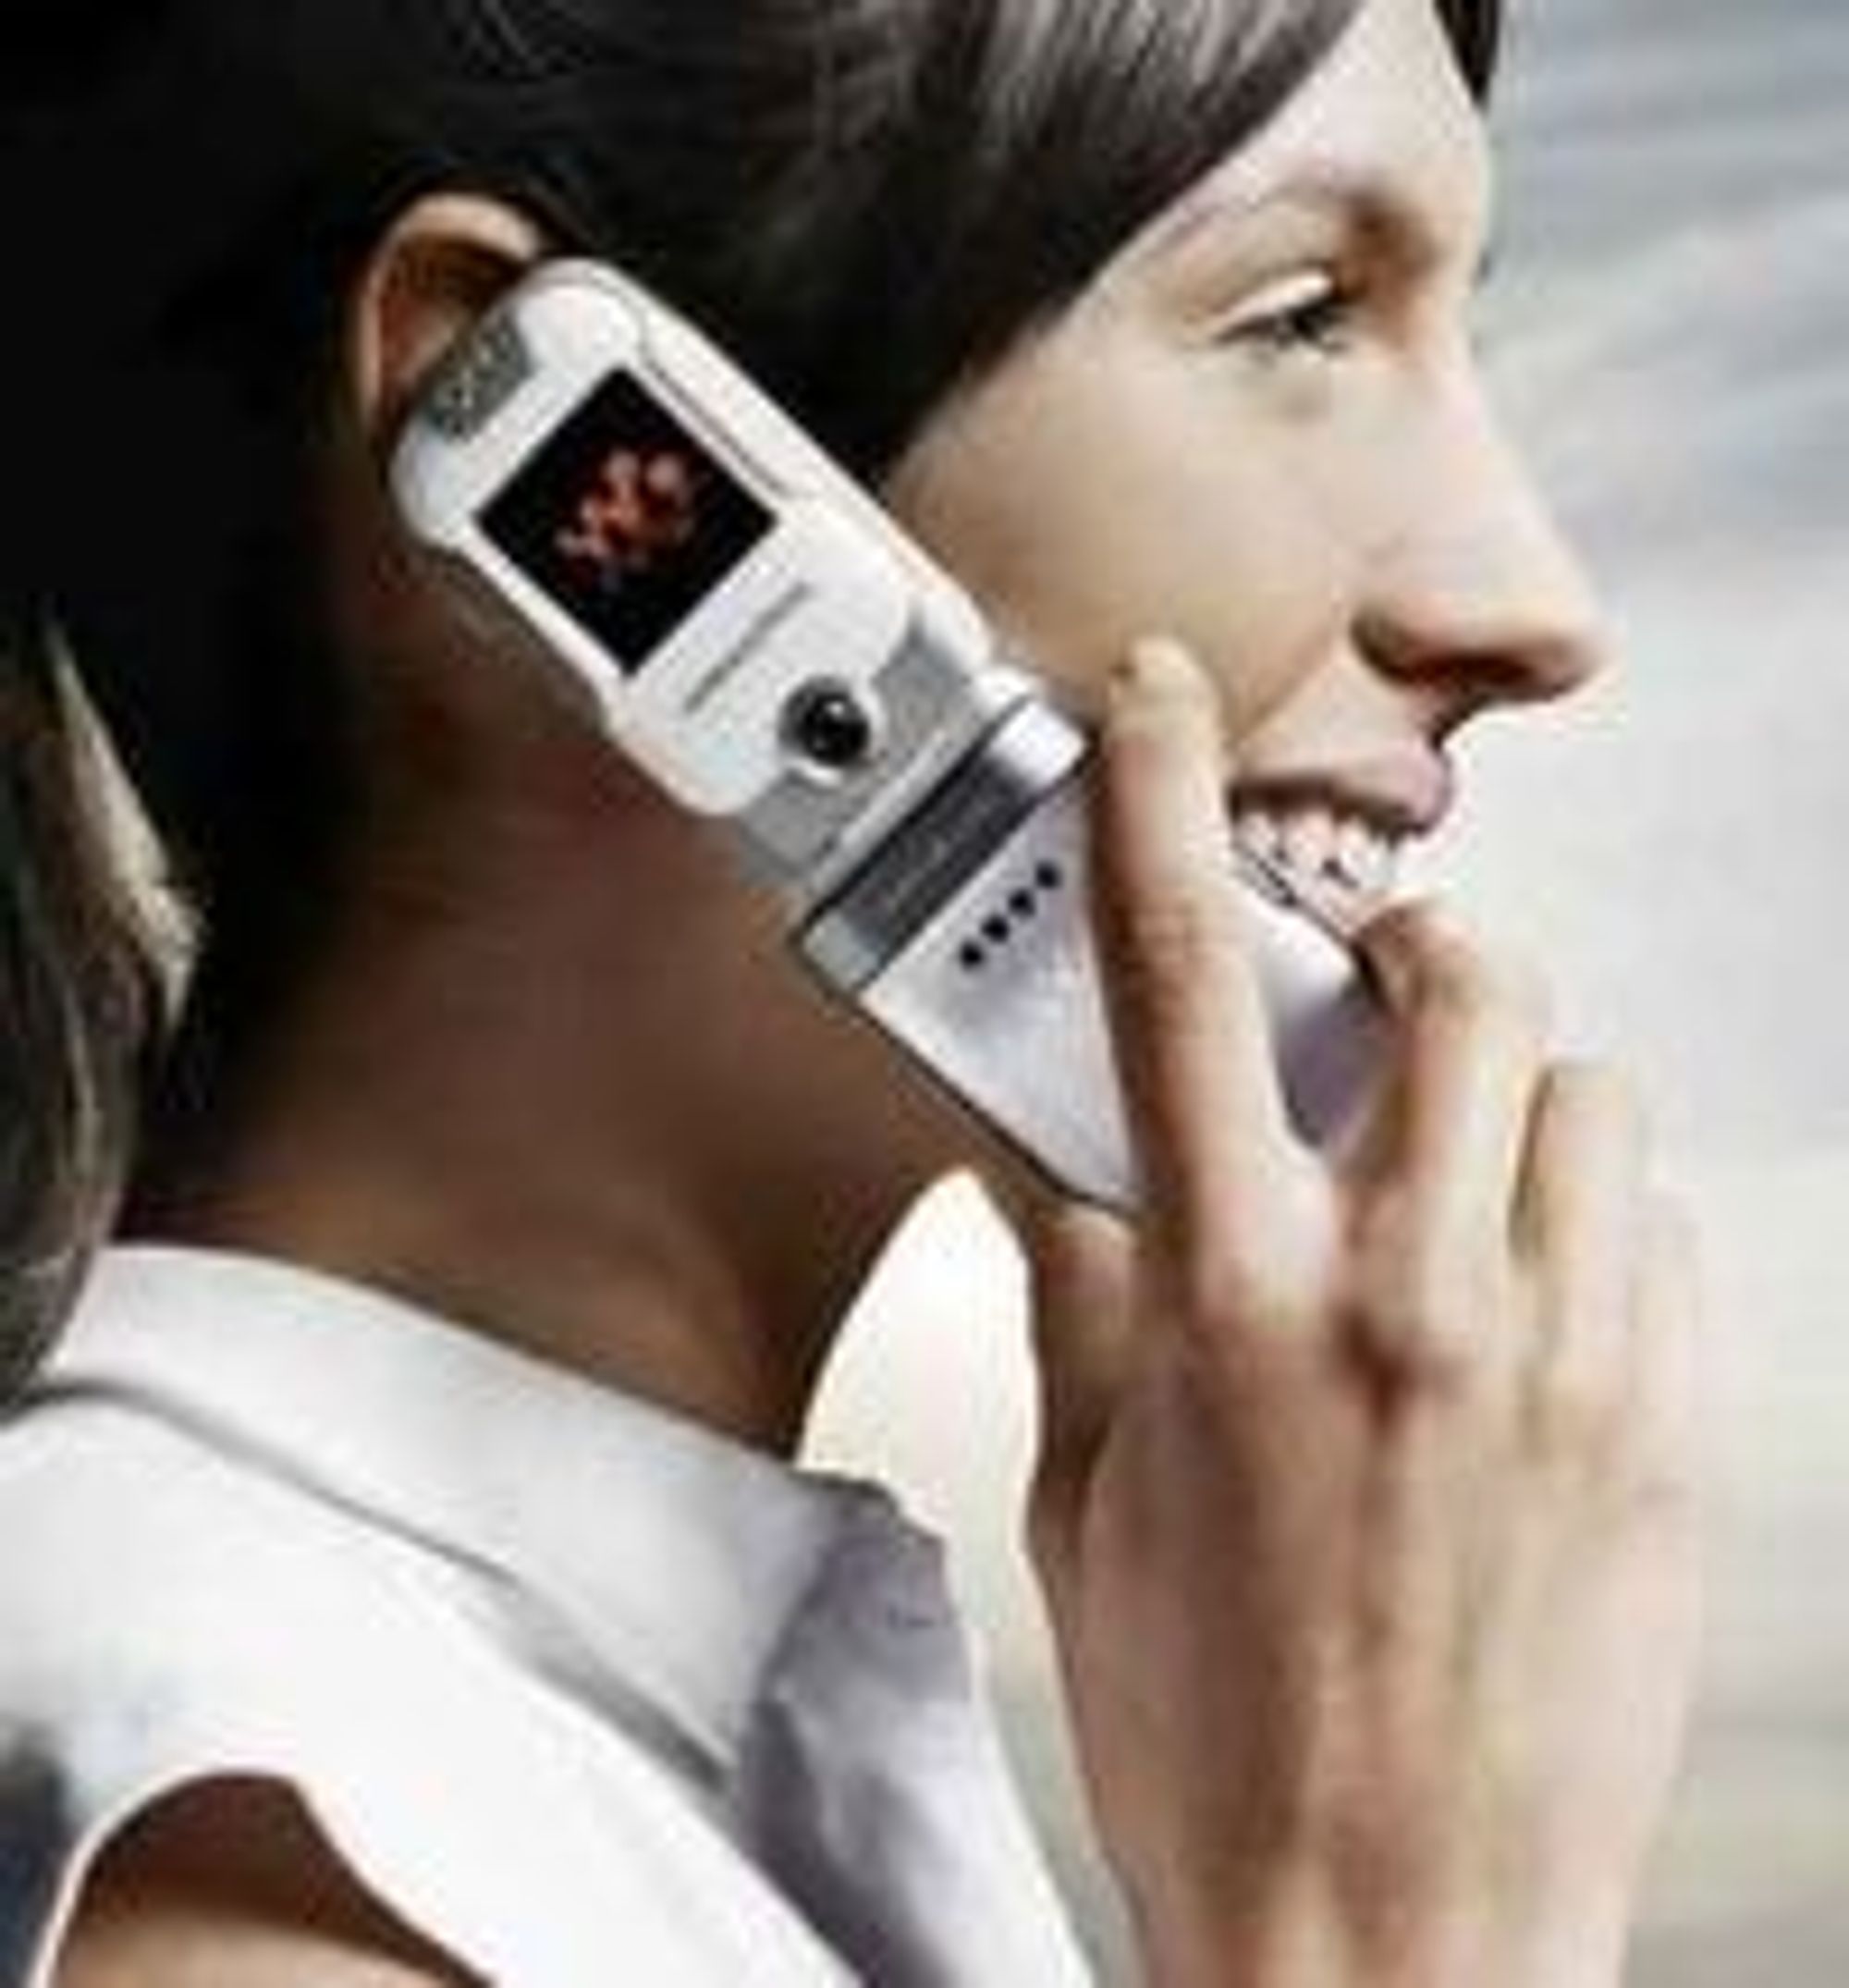 Nå er det offisielt: WHO erkjenner at det kan være forbundet med økt risiko for en spesiell type hjernesvulst dersom man utsetter hodet for nærkontakt med mobiltelefon under samtale.